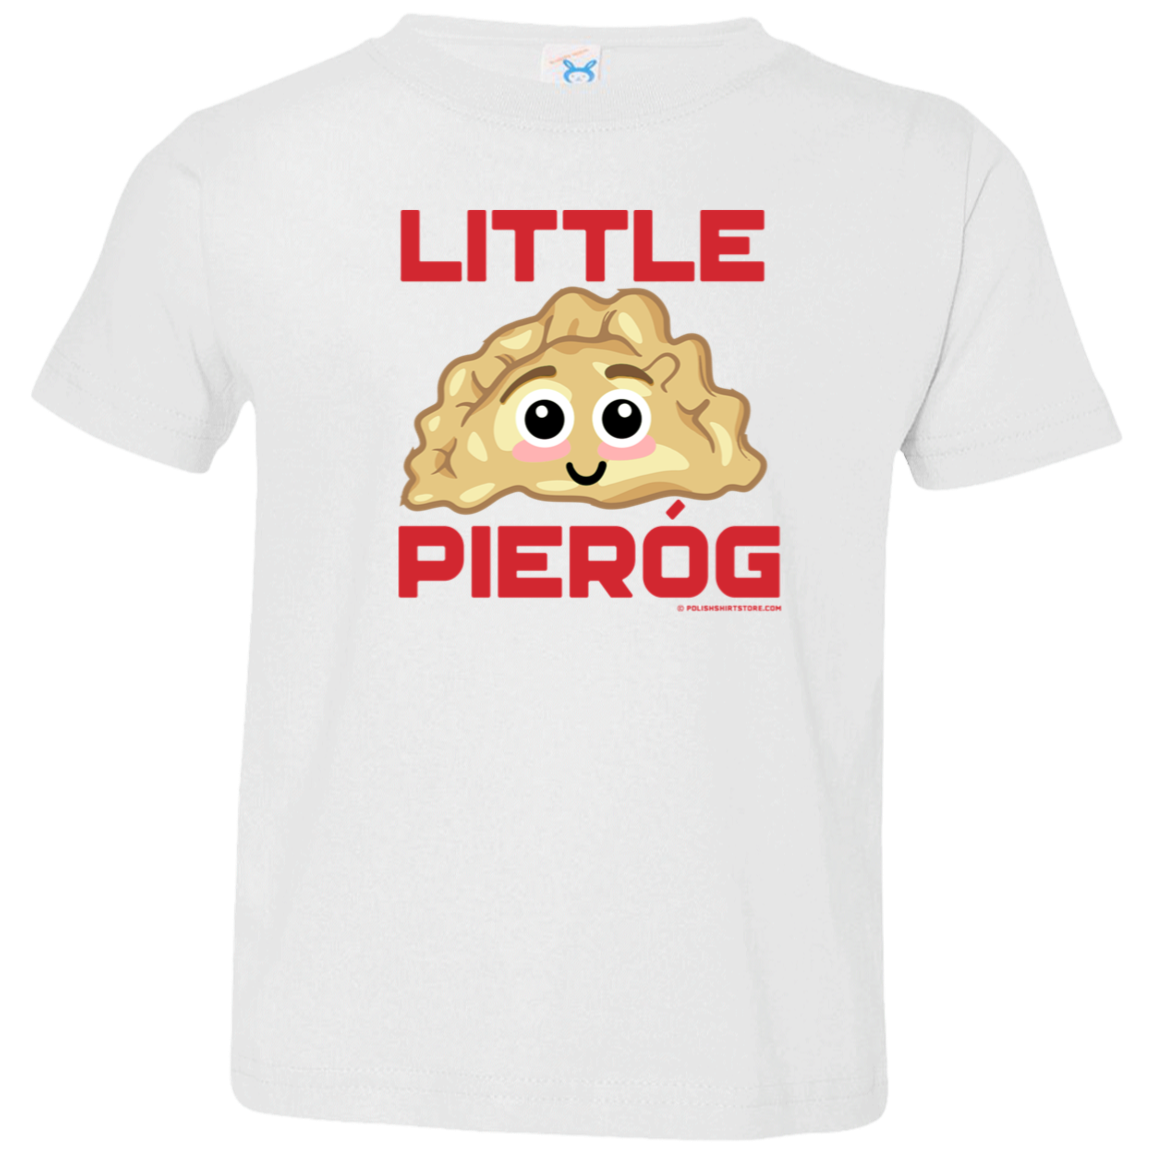 Little Pierog Infant & Toddler T-Shirt Apparel CustomCat Toddler T-Shirt White 2T